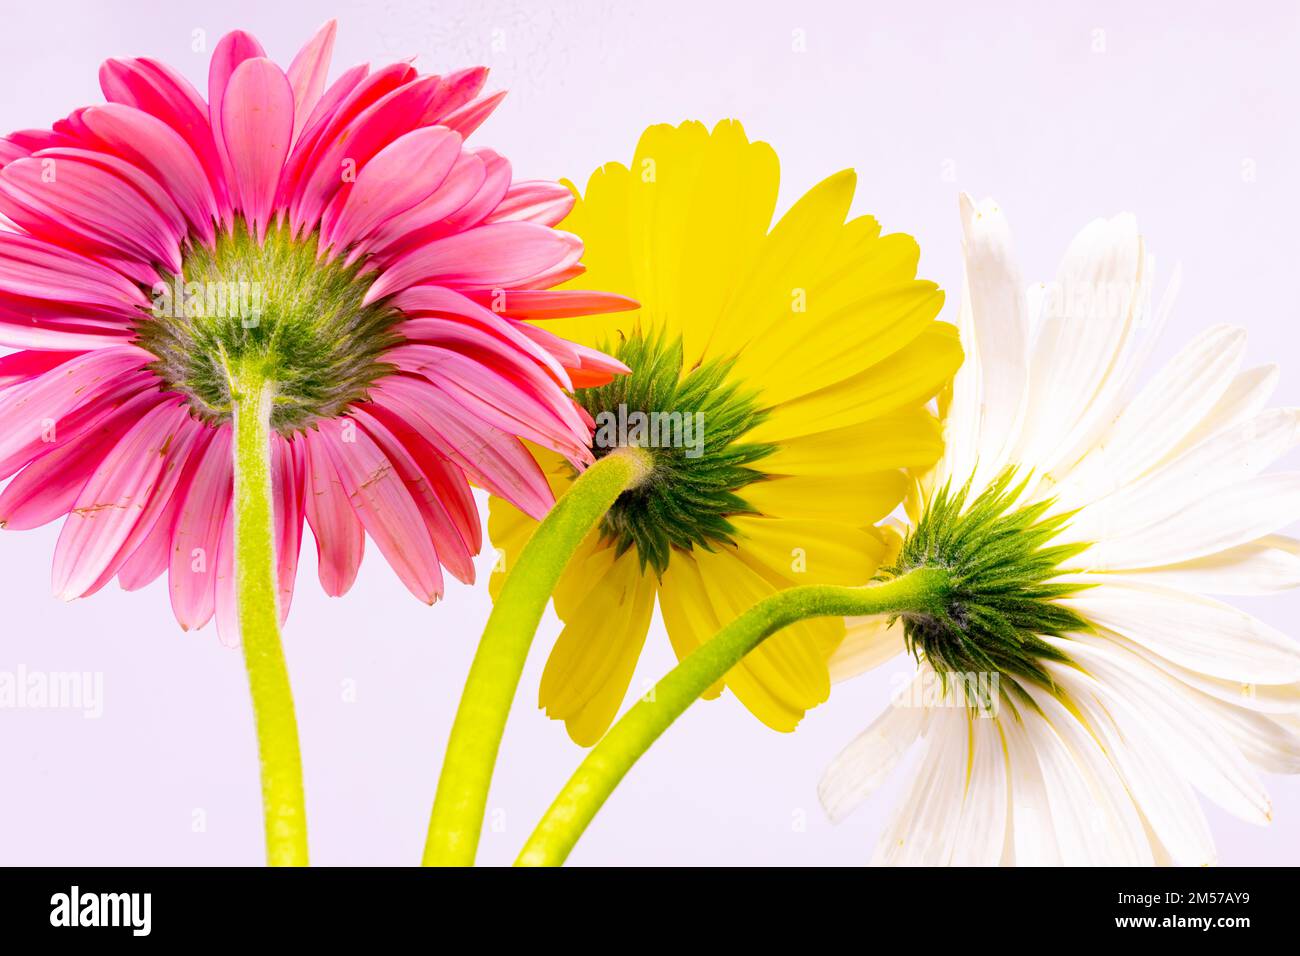 Immagine dei fiori di Gerbera con steli, colori vivaci e sfondo bianco Foto Stock